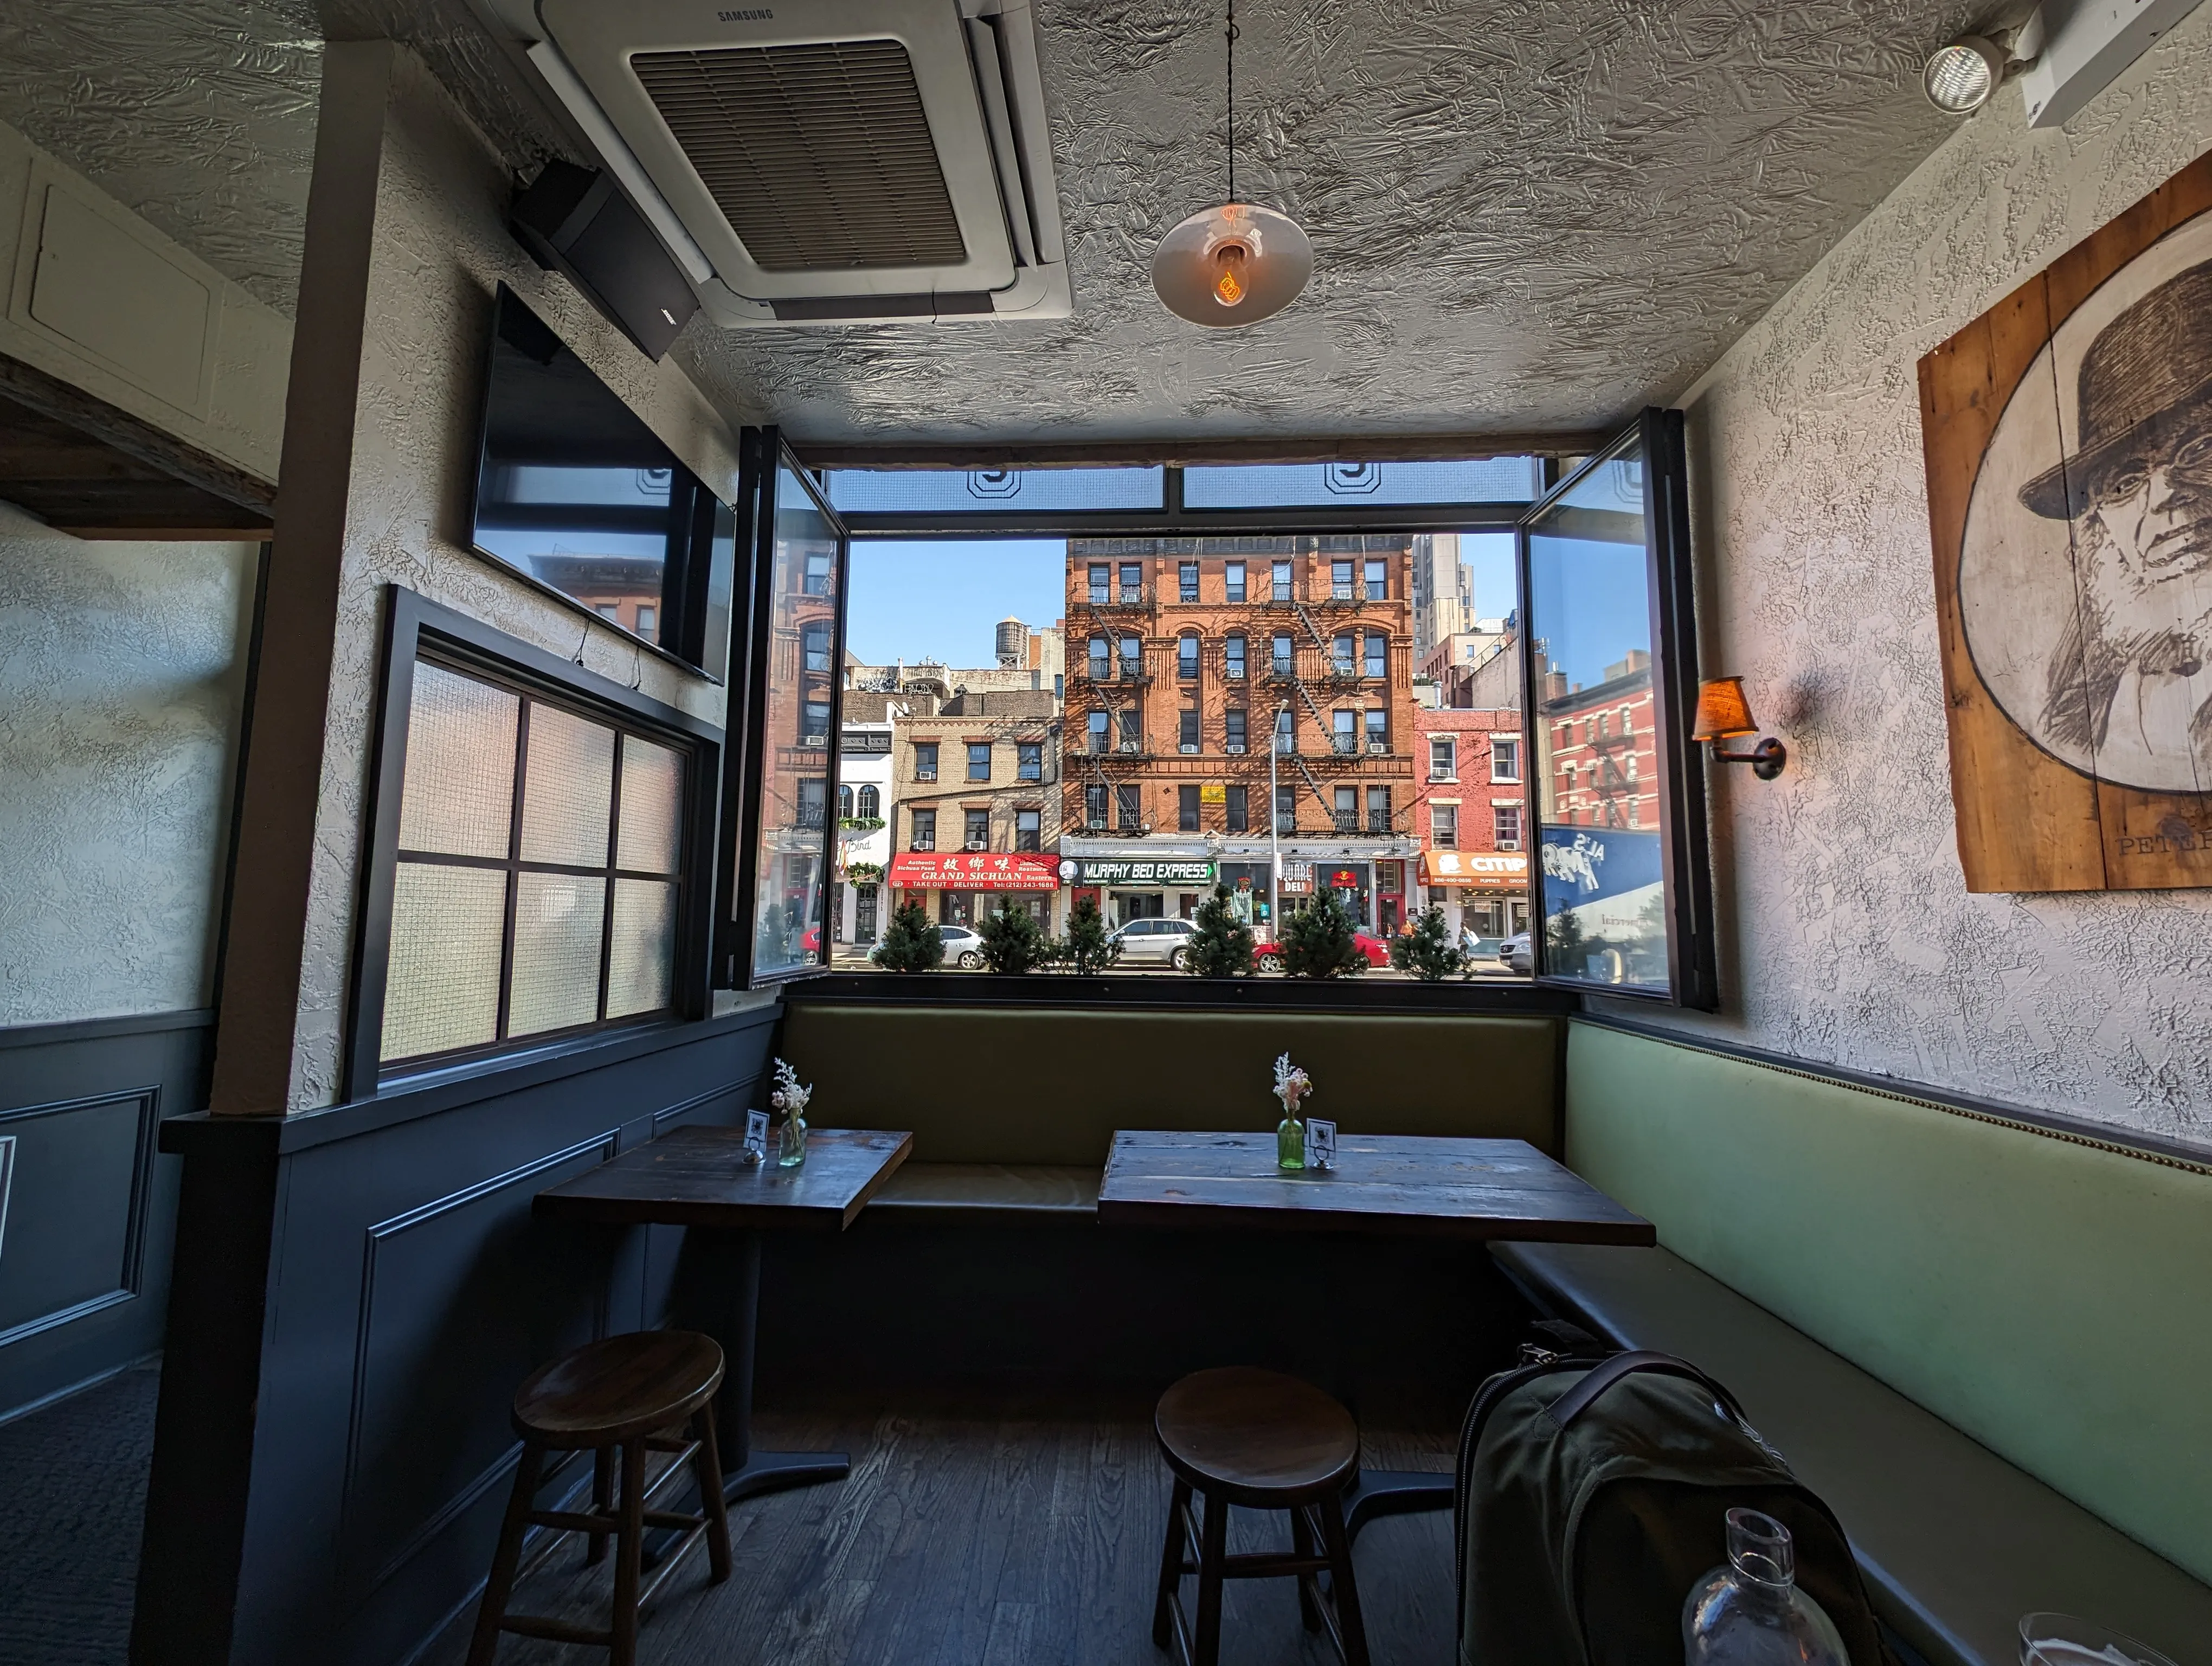 Фото ресторана в Нью-Йорке с видом из окна на здание через улицу, сделанное с помощью Google Pixel 8 Pro.